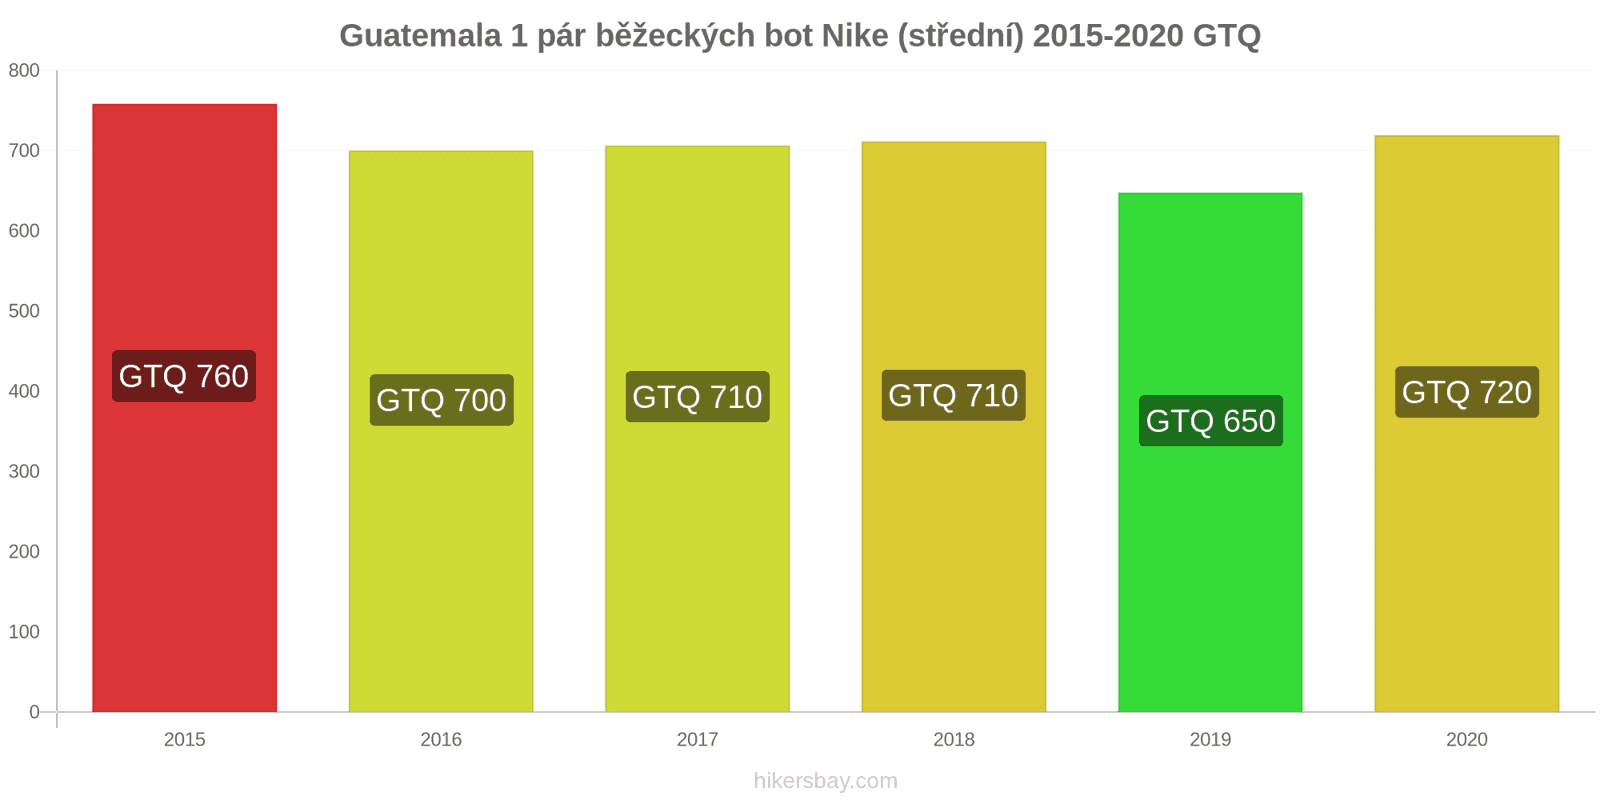 Guatemala změny cen 1 pár běžeckých bot Nike (střední) hikersbay.com